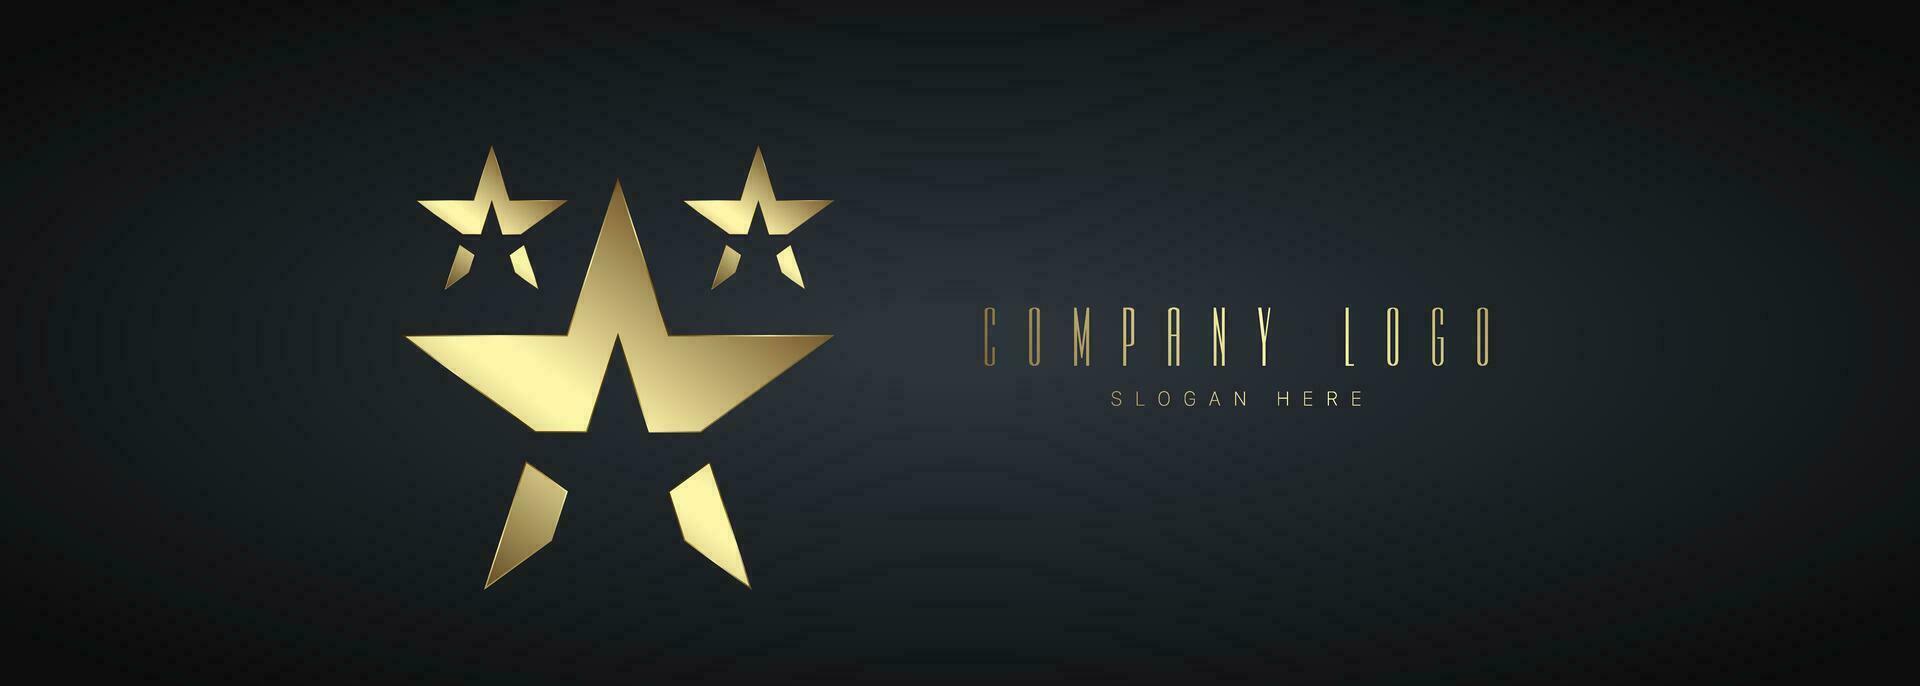 golden und Luxus Kreise Gruppen Logo Vektor zum Unternehmen auf dunkel Hintergrund Vorlagen